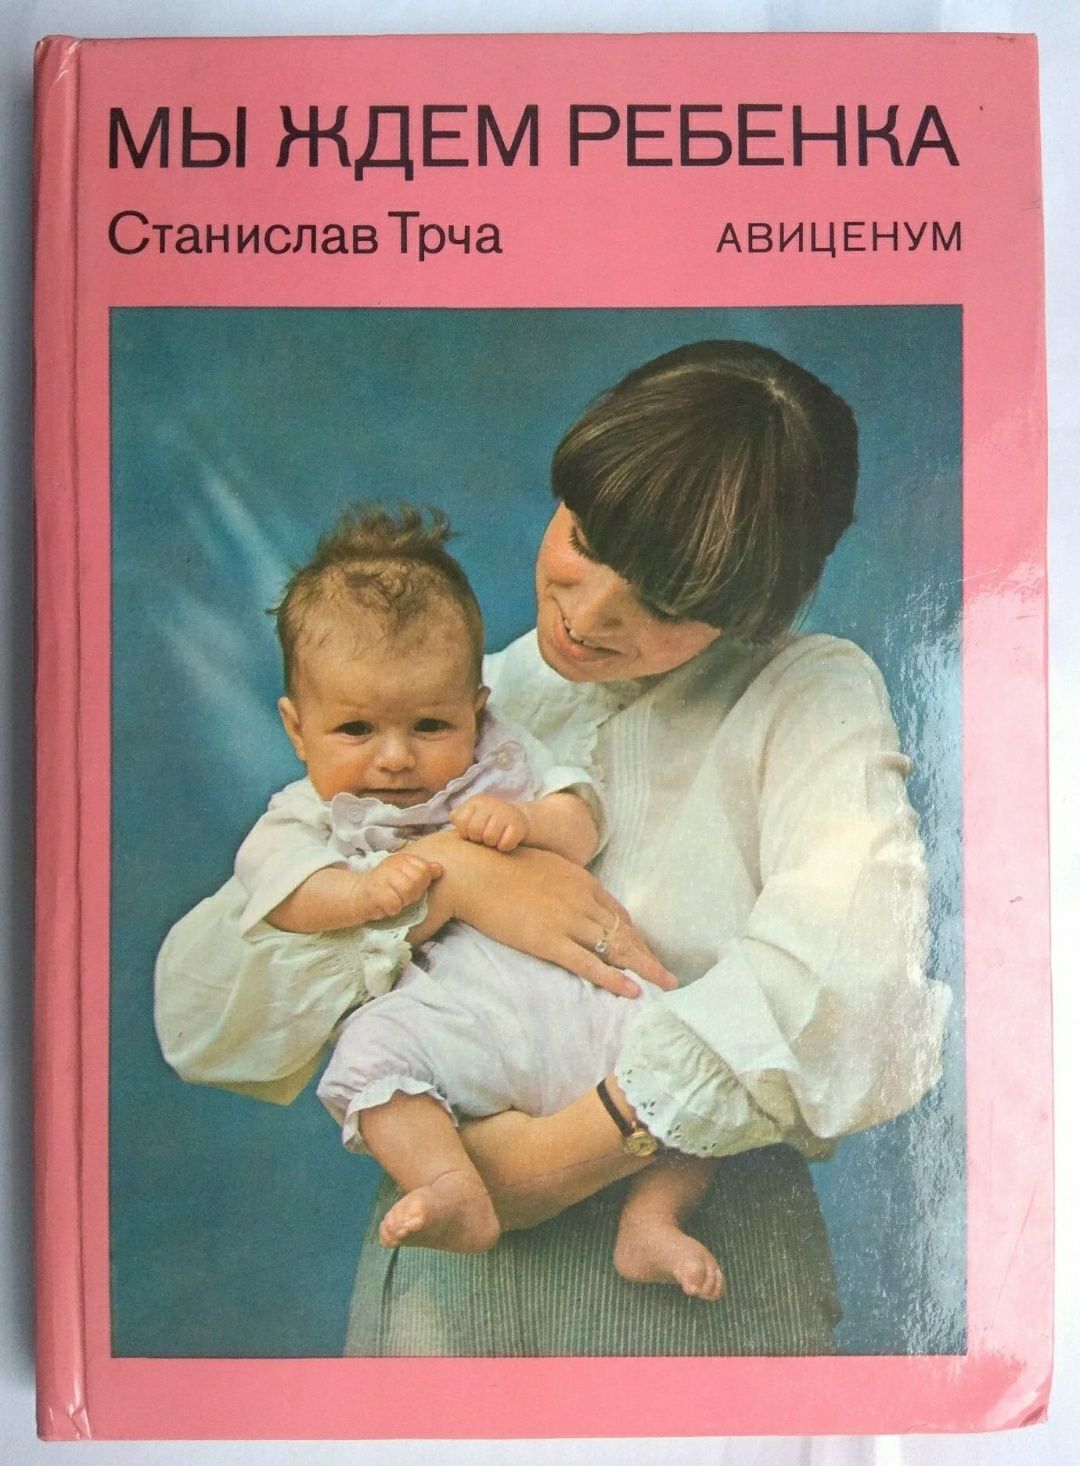 С. Трча "Мы ждём ребенка" 1986 год